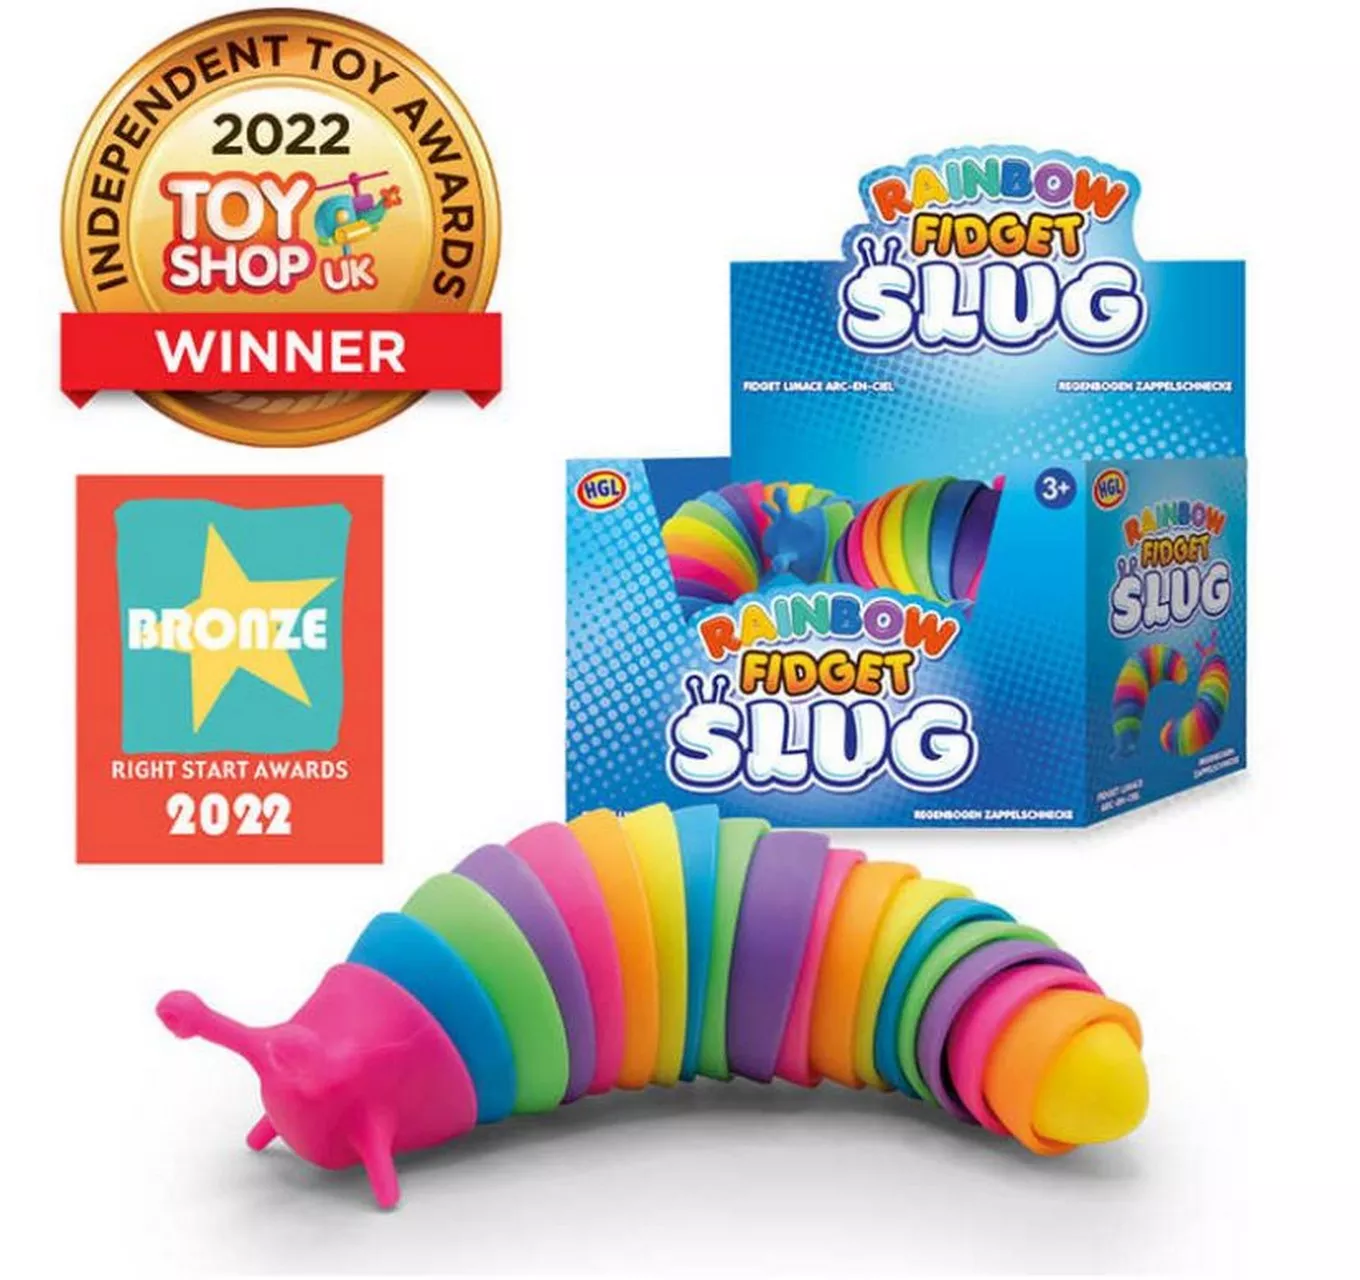 Rainbow Fidget Slug - Each